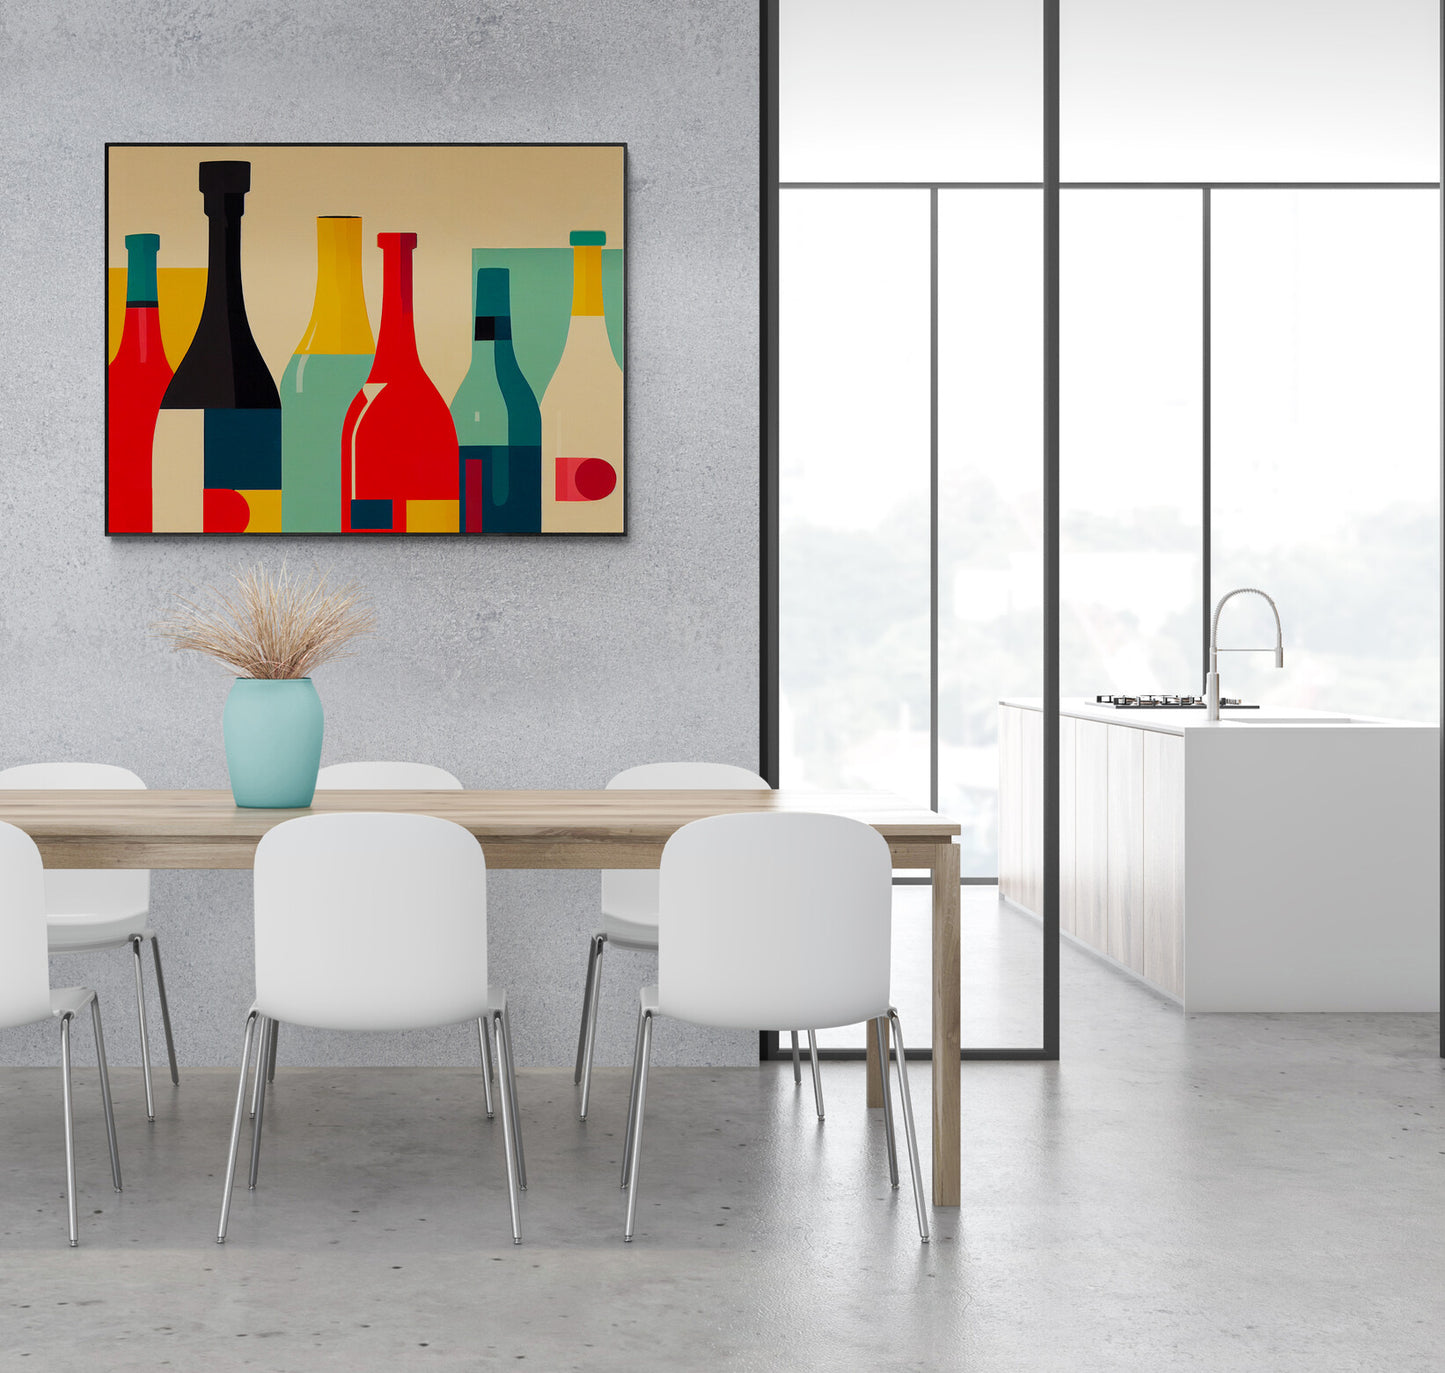 Oeuvre minimaliste vibrante sur mur de salle à manger épurée.